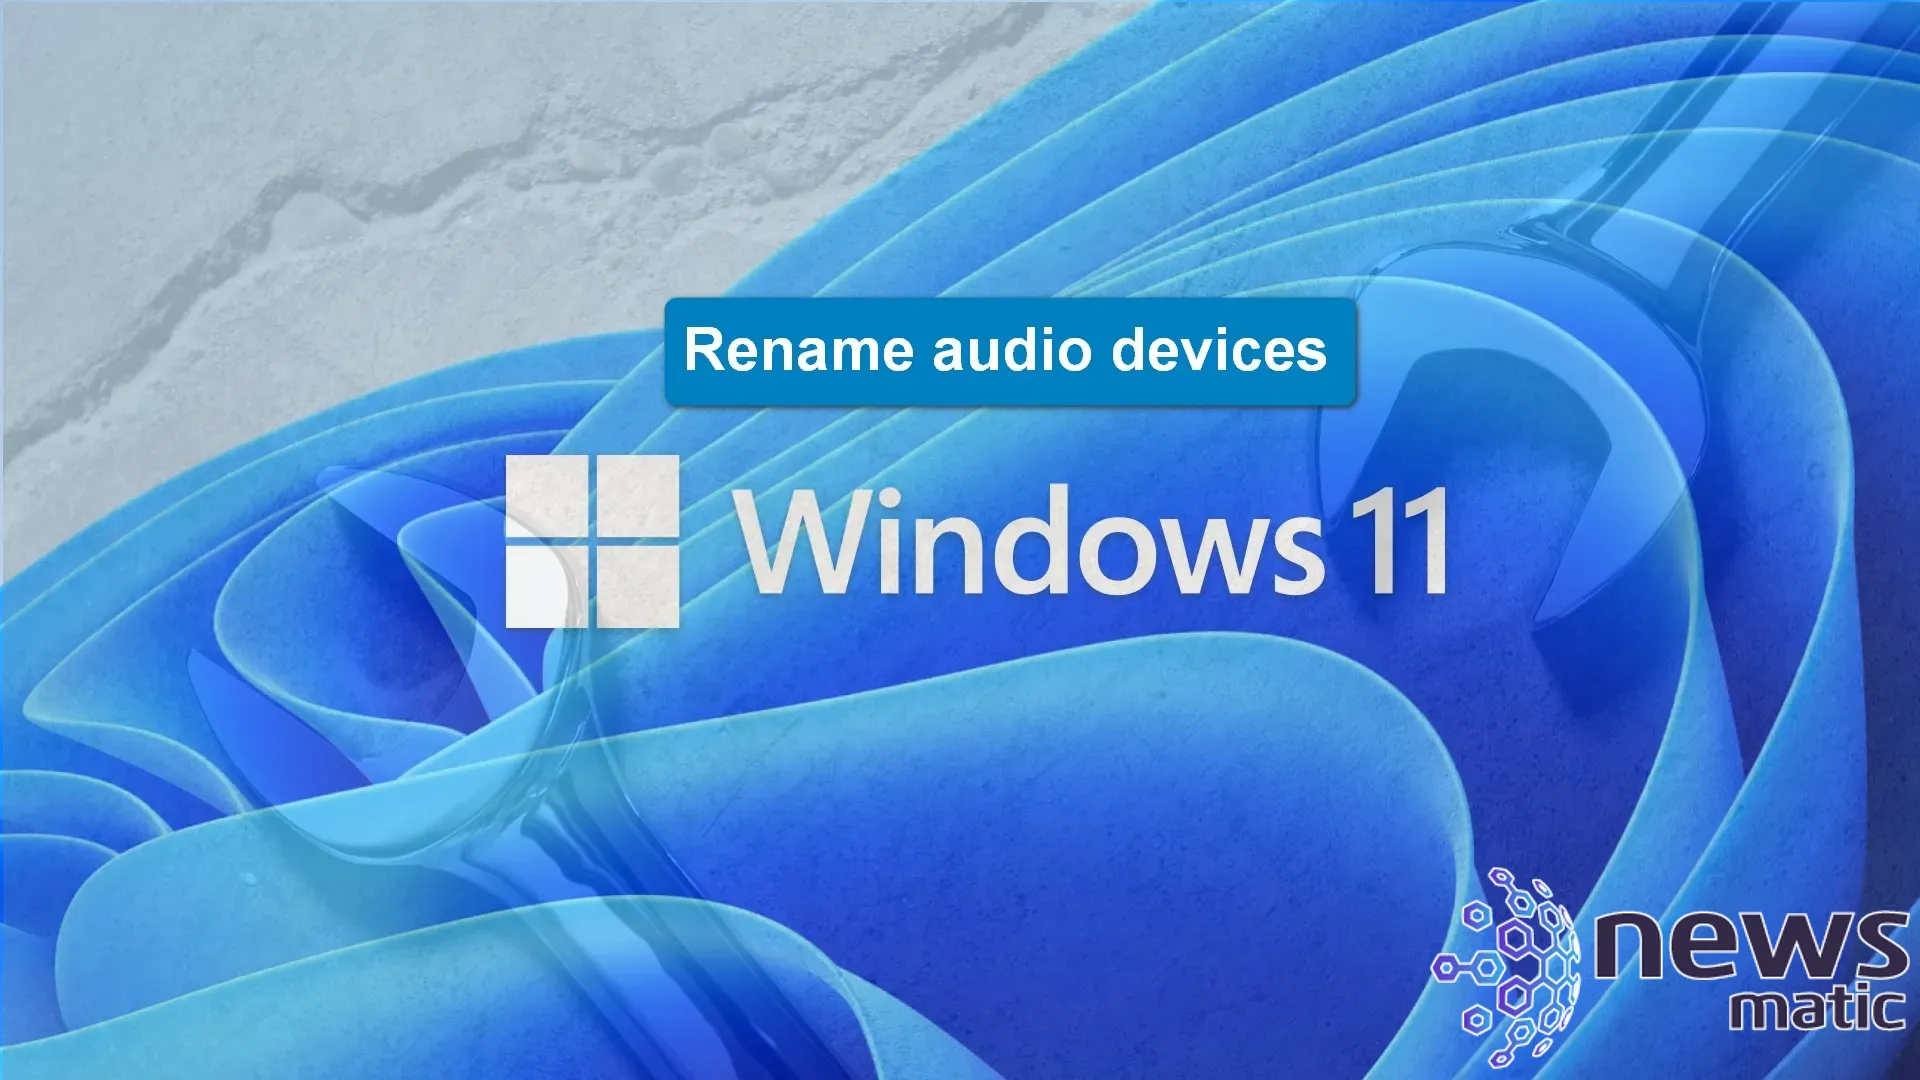 Cómo cambiar el nombre de los dispositivos de audio en Windows 11 - Software | Imagen 1 Newsmatic